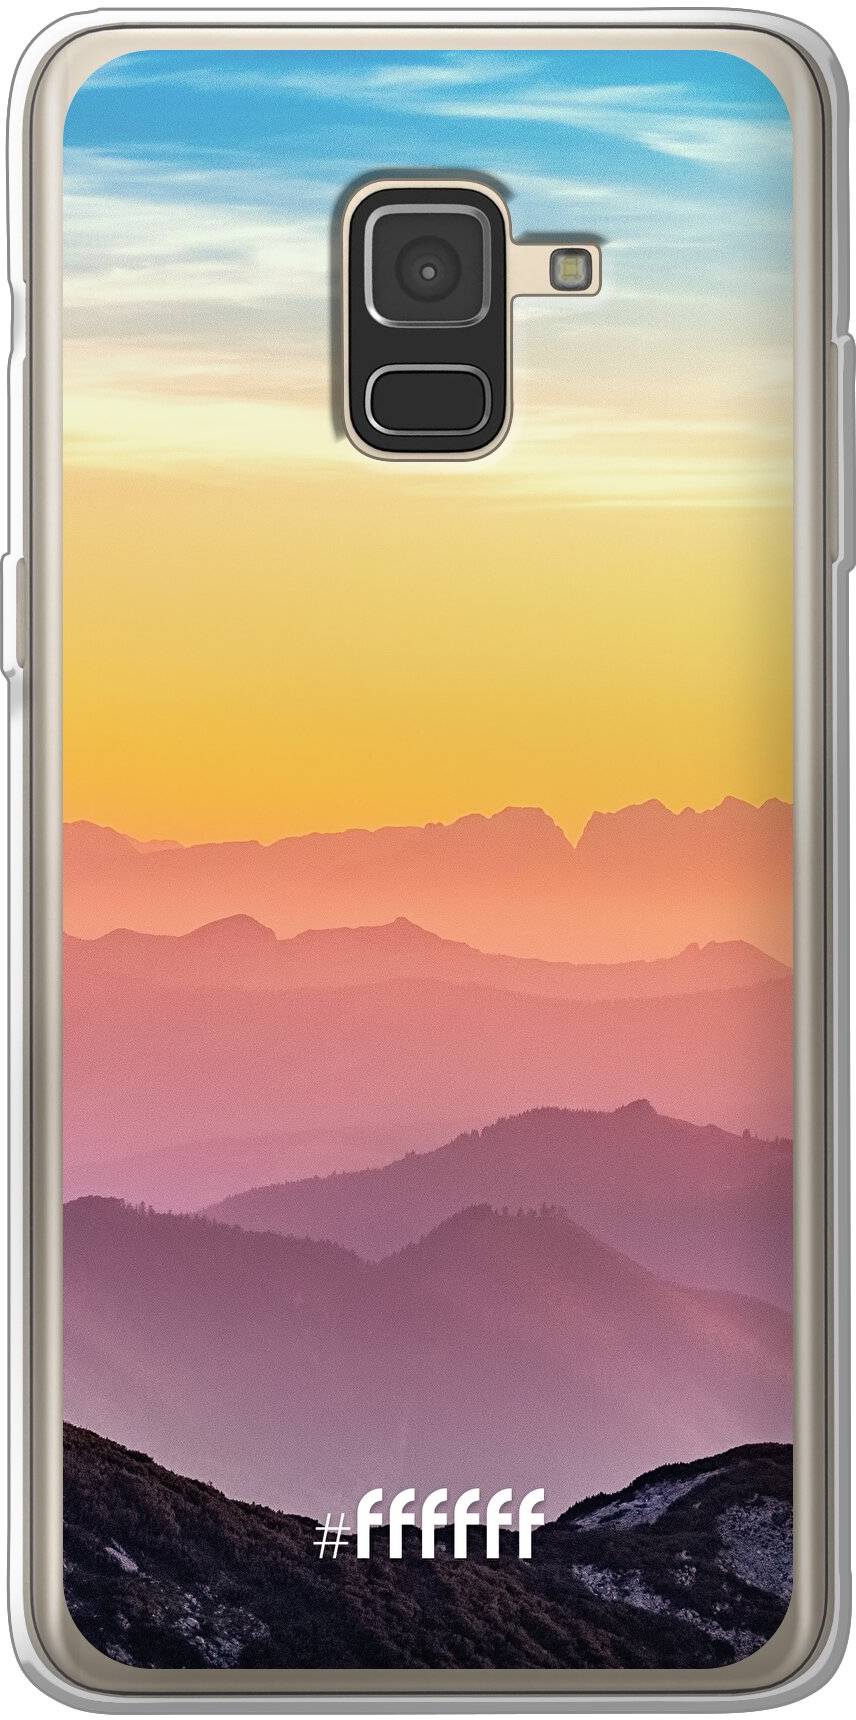 Golden Hour Galaxy A8 (2018)